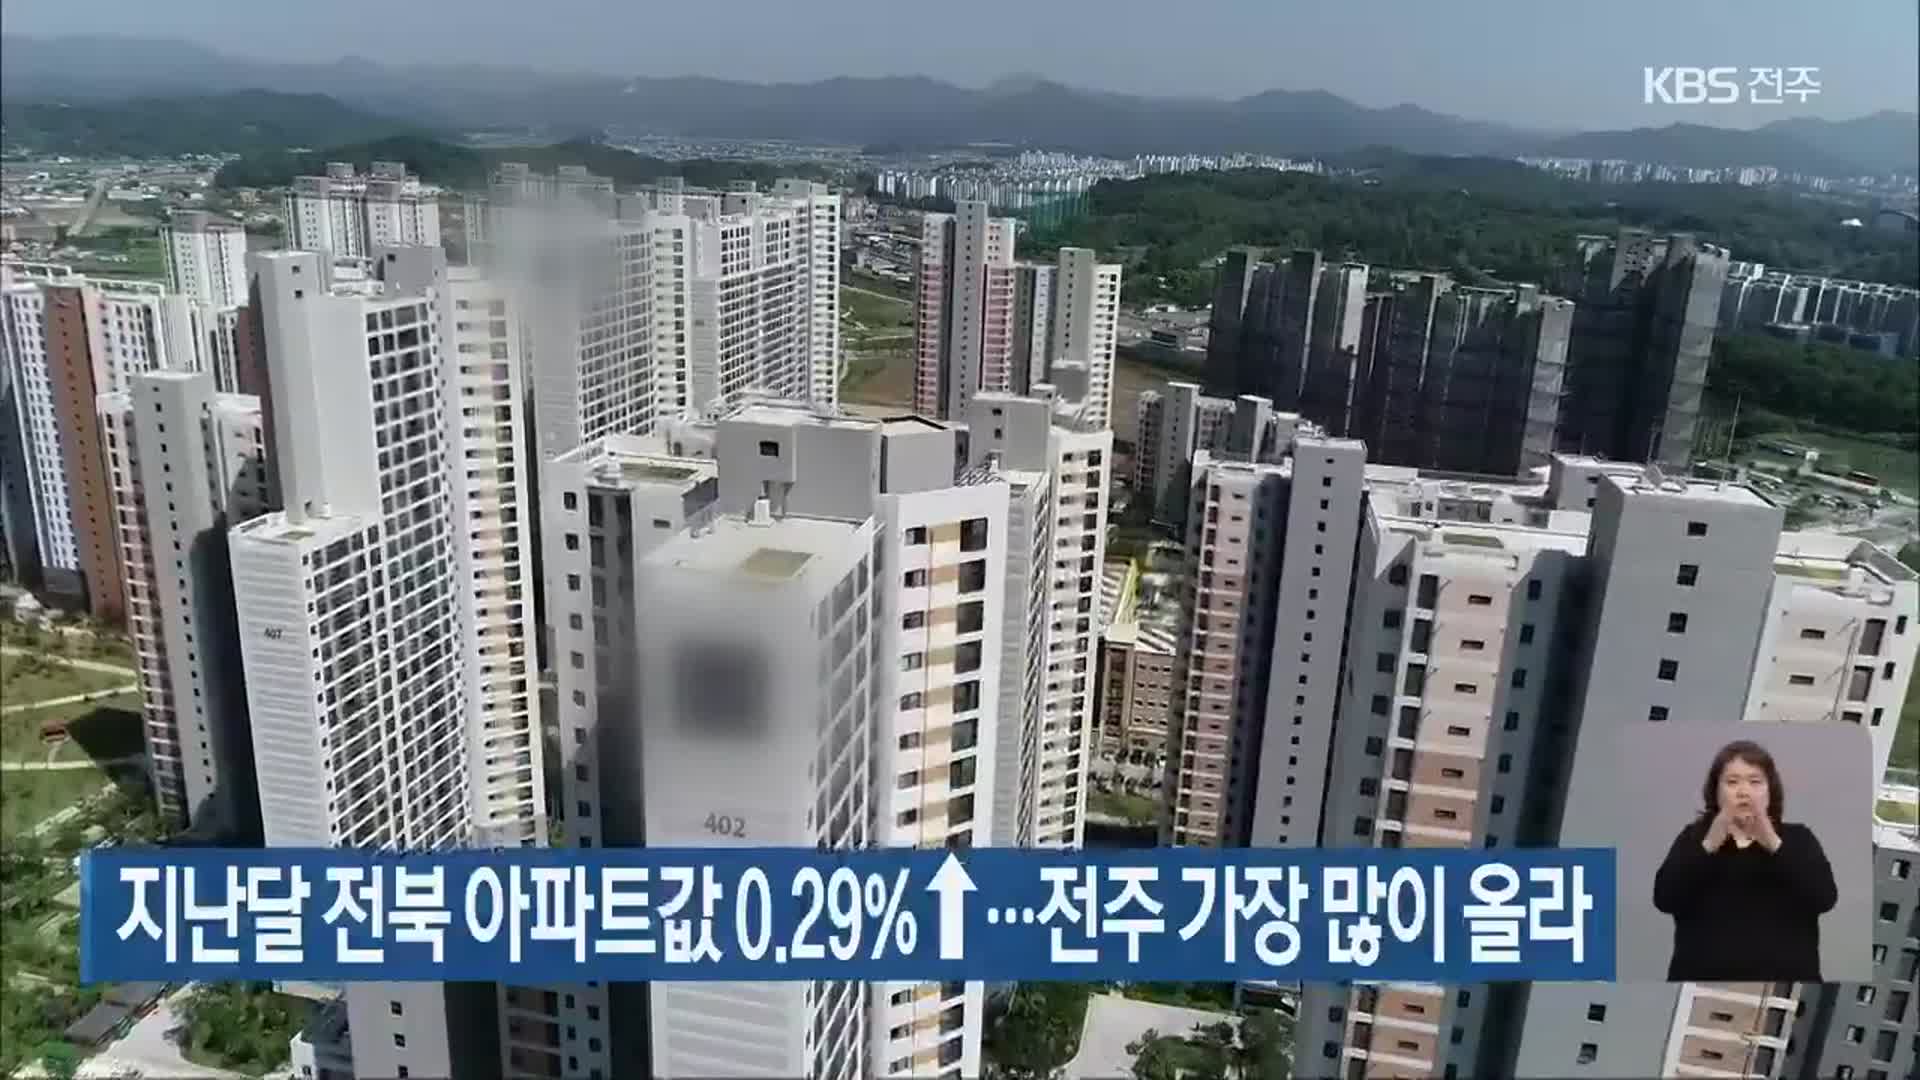 지난달 전북 아파트값 0.29%↑…전주 가장 많이 올라